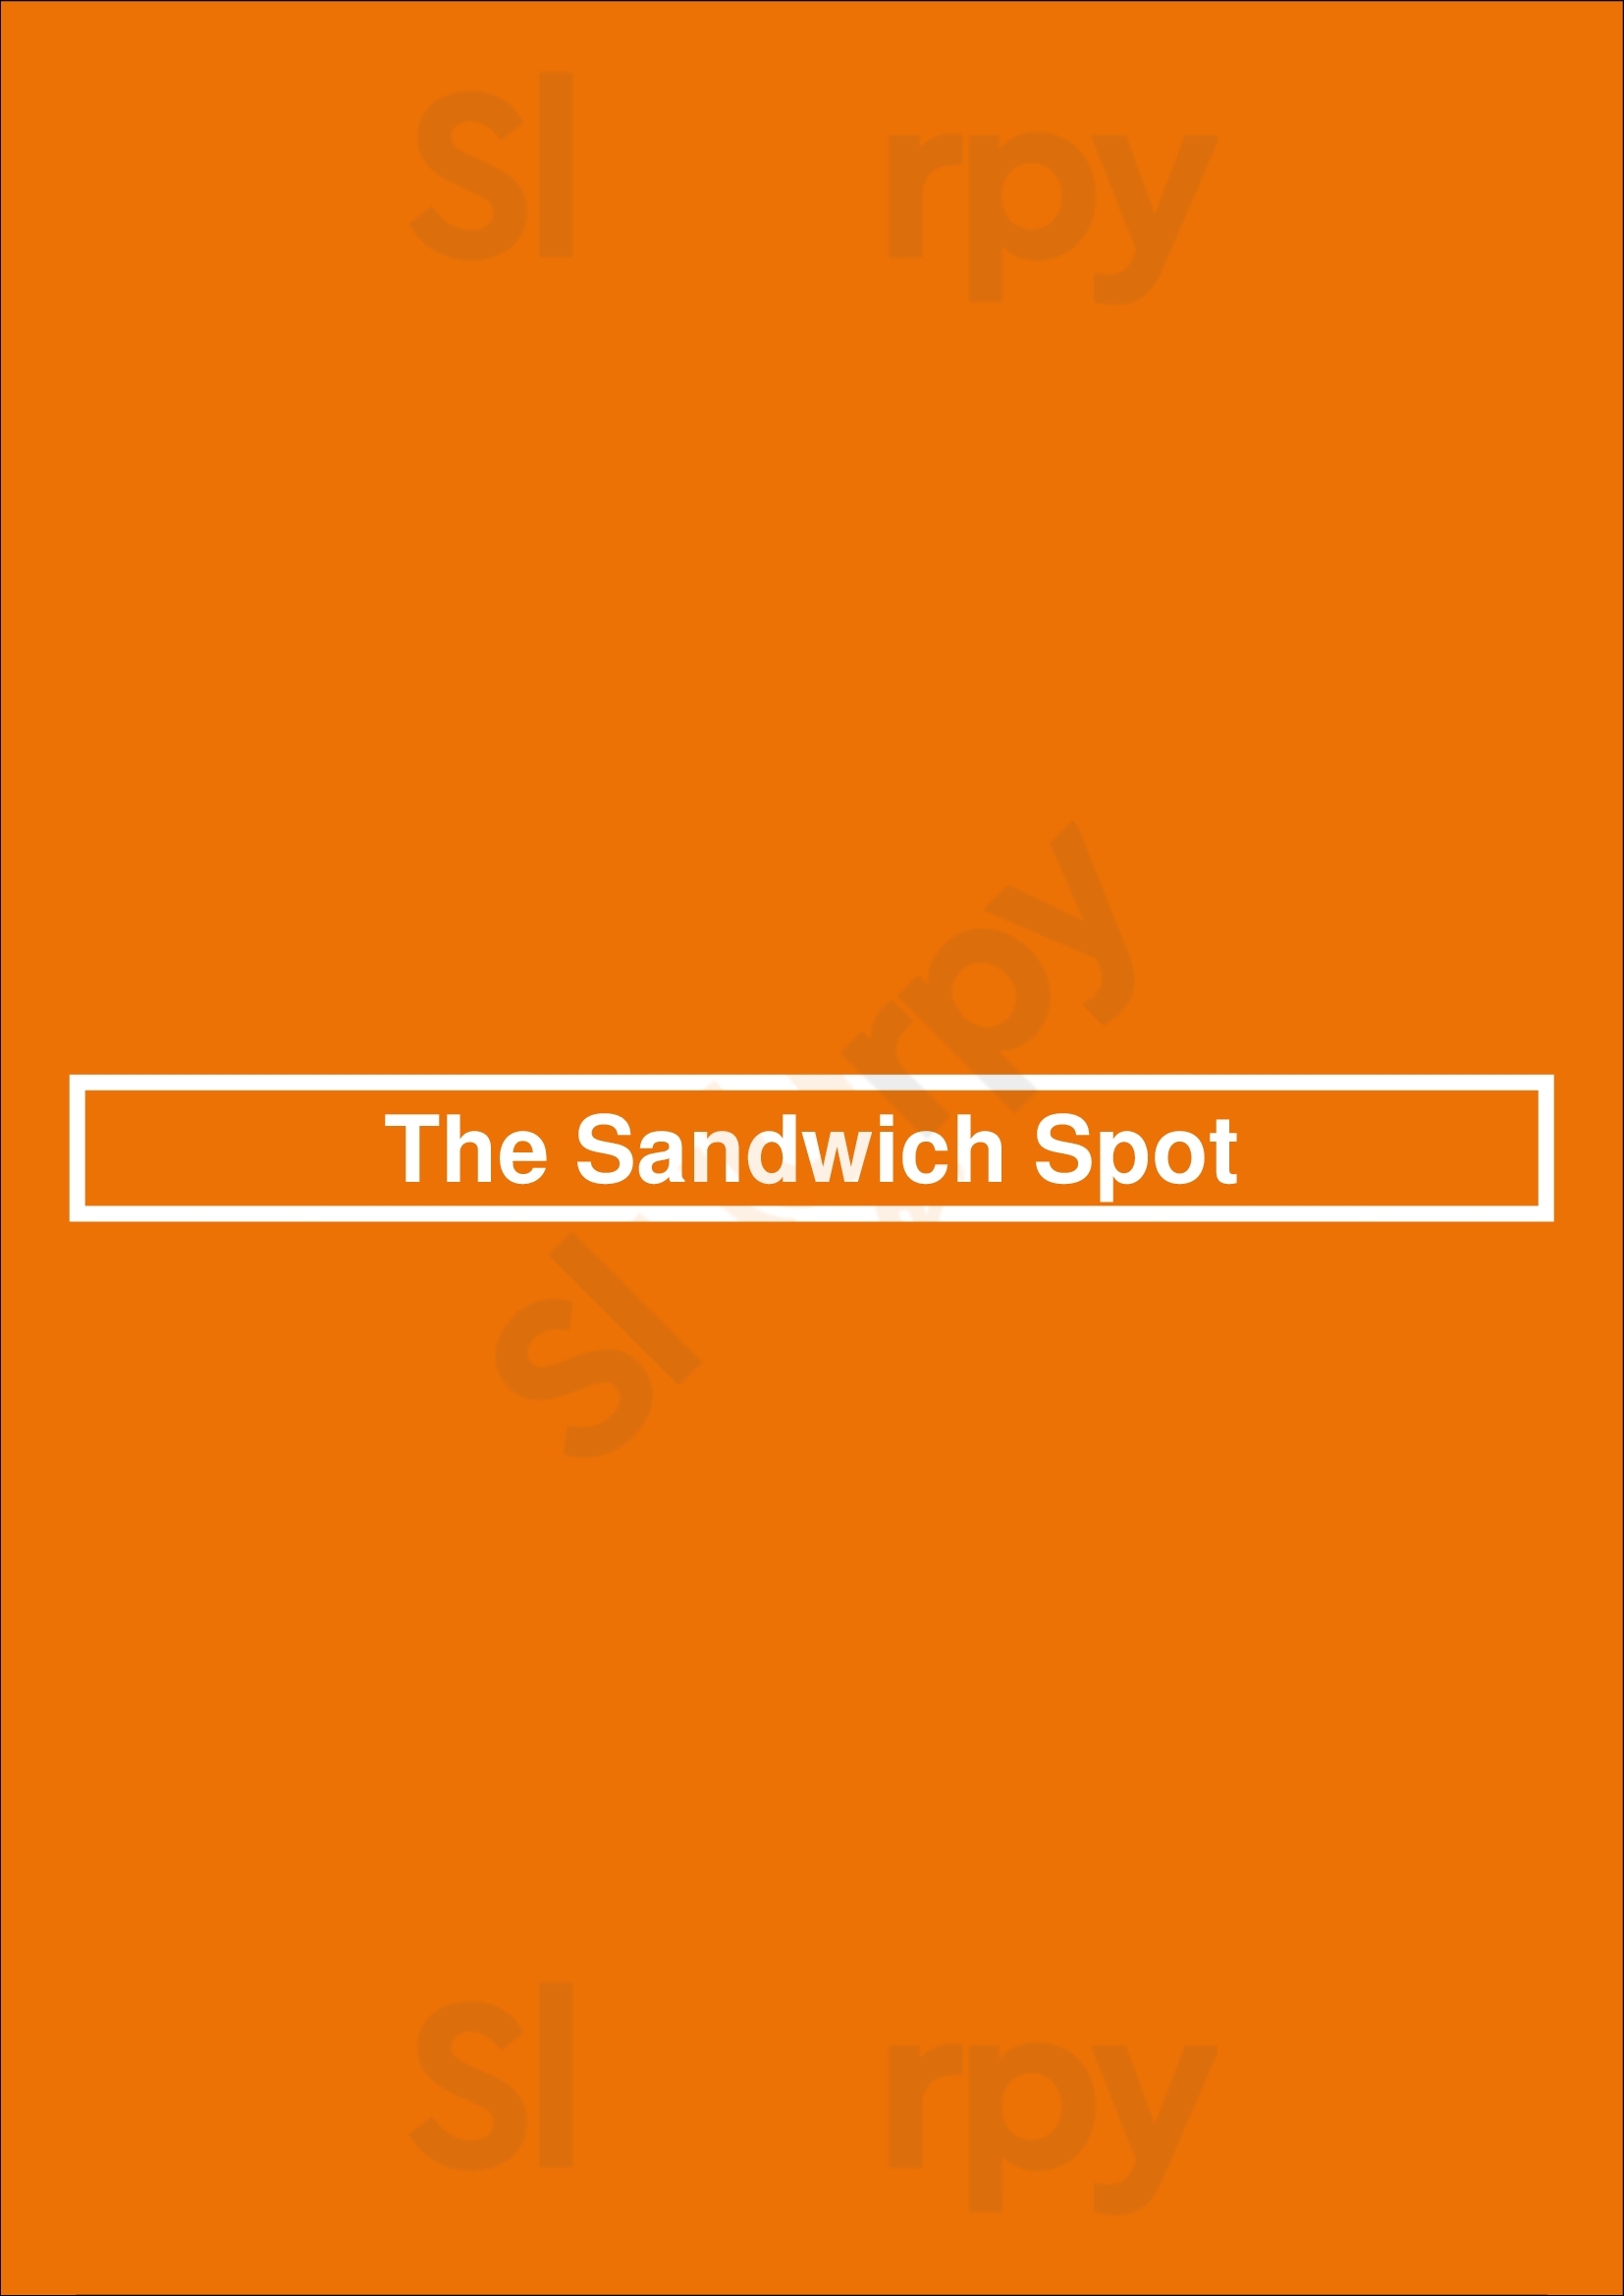 The Sandwich Spot San Jose Menu - 1